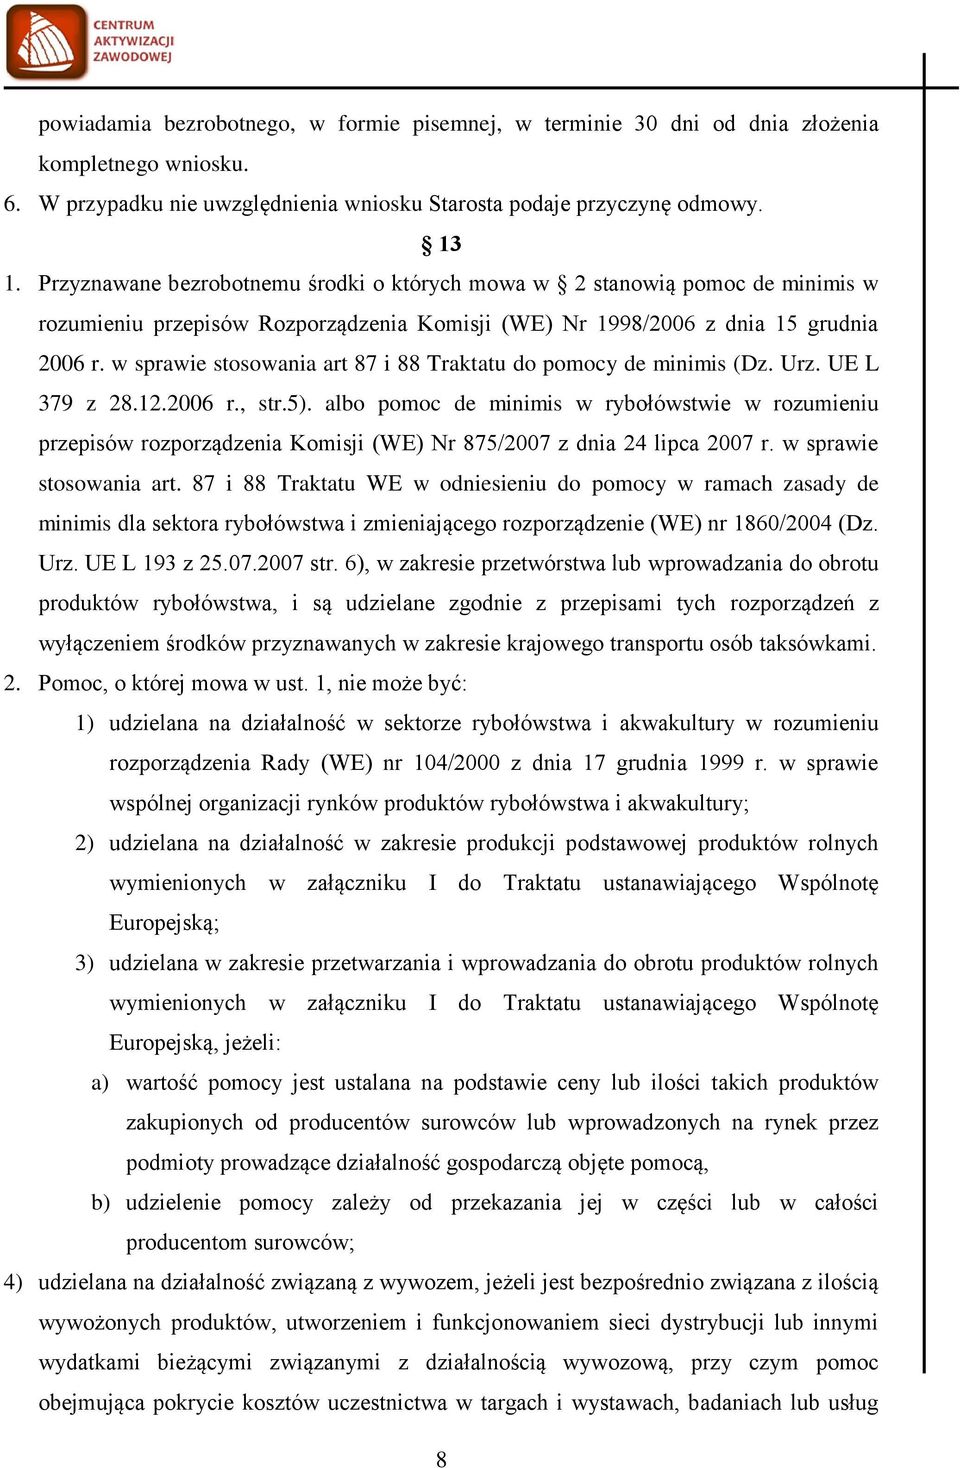 w sprawie stosowania art 87 i 88 Traktatu do pomocy de minimis (Dz. Urz. UE L 379 z 28.12.2006 r., str.5).